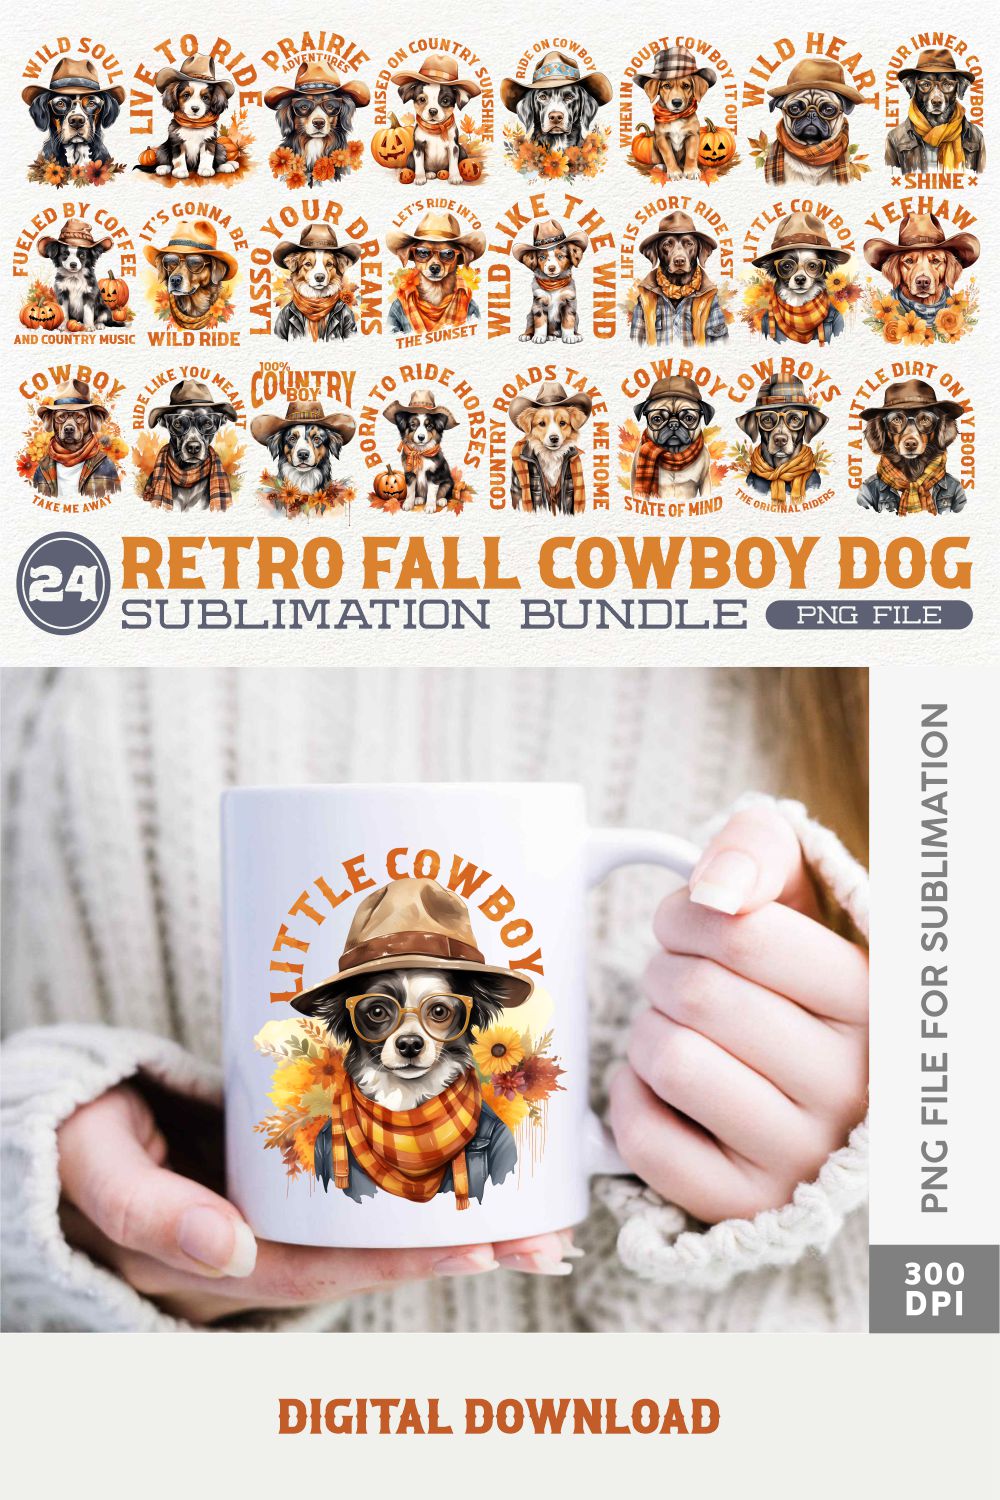 Retro Fall Cowboy Dog Sublimation Bundle, Western Clipart Collection, Autumn Designs Bundle pinterest preview image.